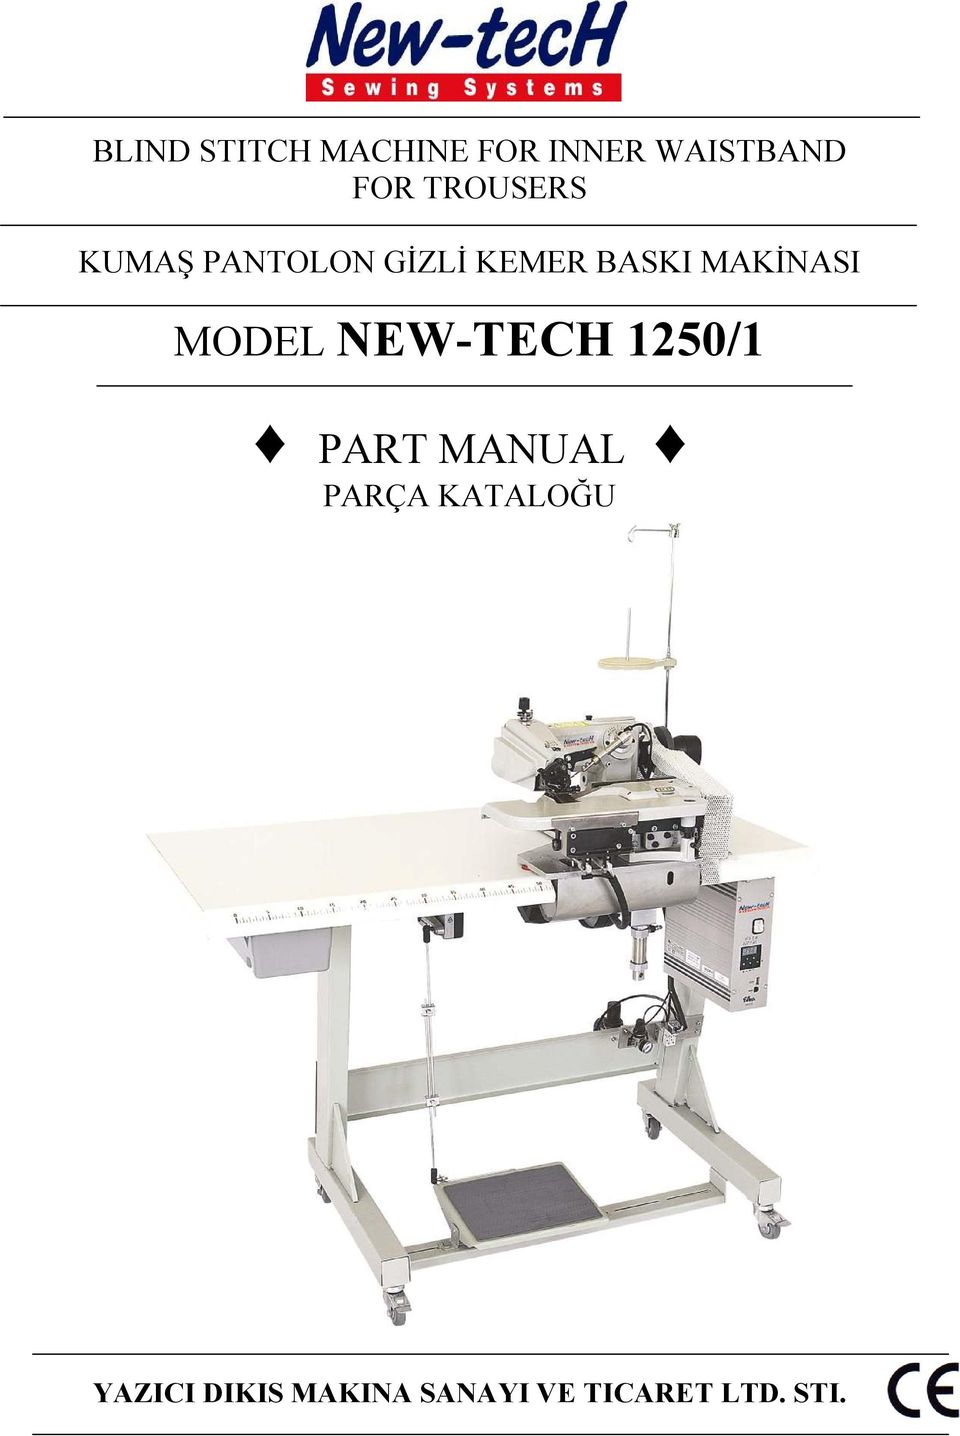 MAKİNASI MODEL NEW-TECH 1250/1 PART MANUAL